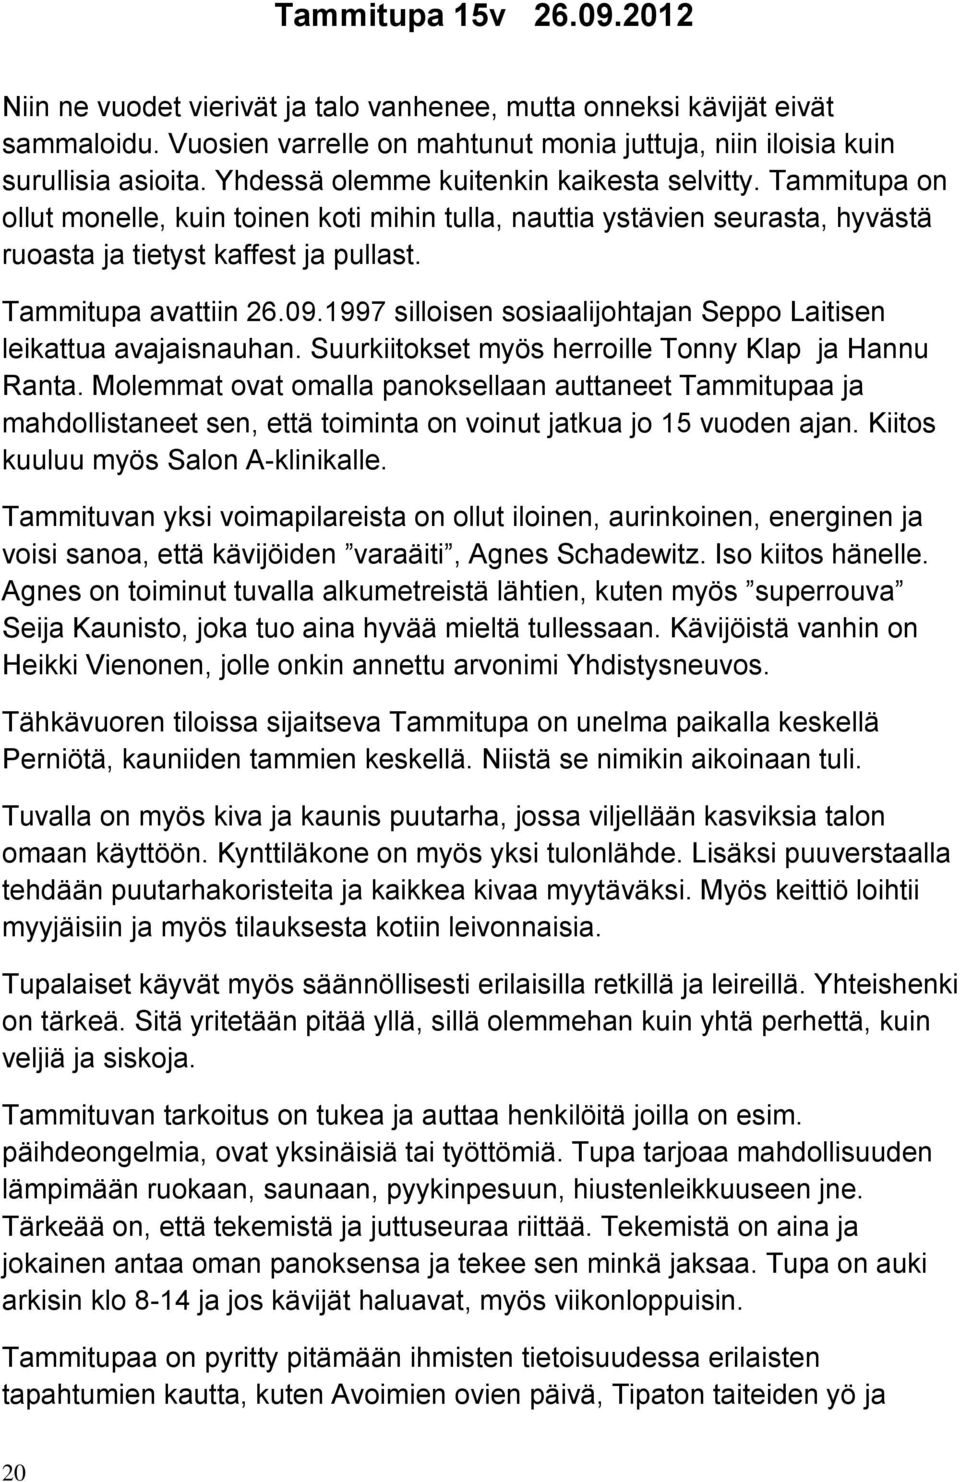 09.1997 silloisen sosiaalijohtajan Seppo Laitisen leikattua avajaisnauhan. Suurkiitokset myös herroille Tonny Klap ja Hannu Ranta.